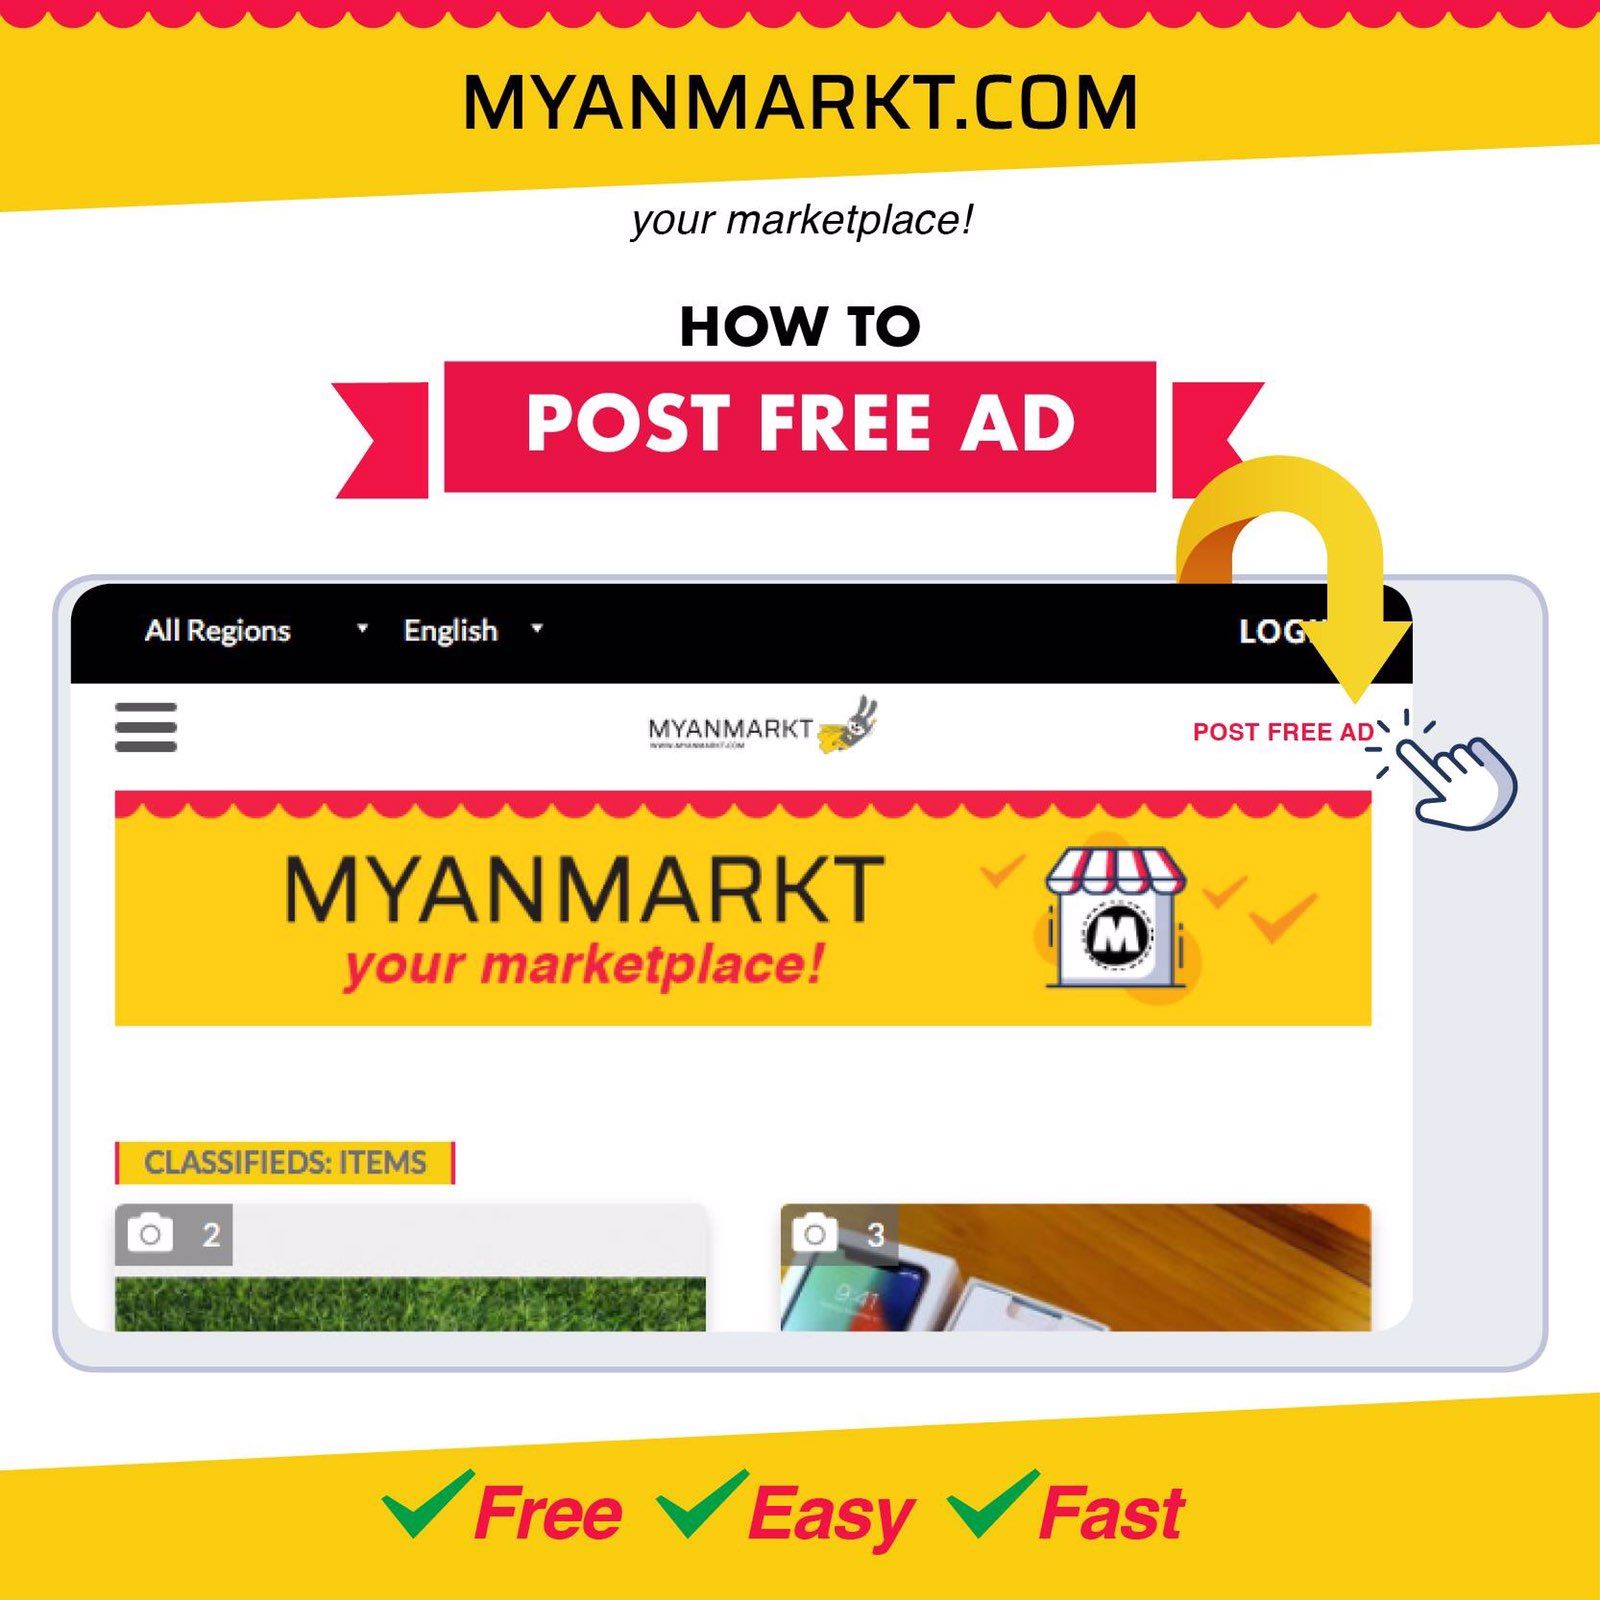 မြန်မာနိုင်ငံ၏ အကောင်းဆုံး အခမဲ့ အွန်လိုင်းဈေးဝယ် ဝက်ဘ်ဆိုဒ် MYANMARKT.COM ကို တရားဝင်မိတ်ဆက်